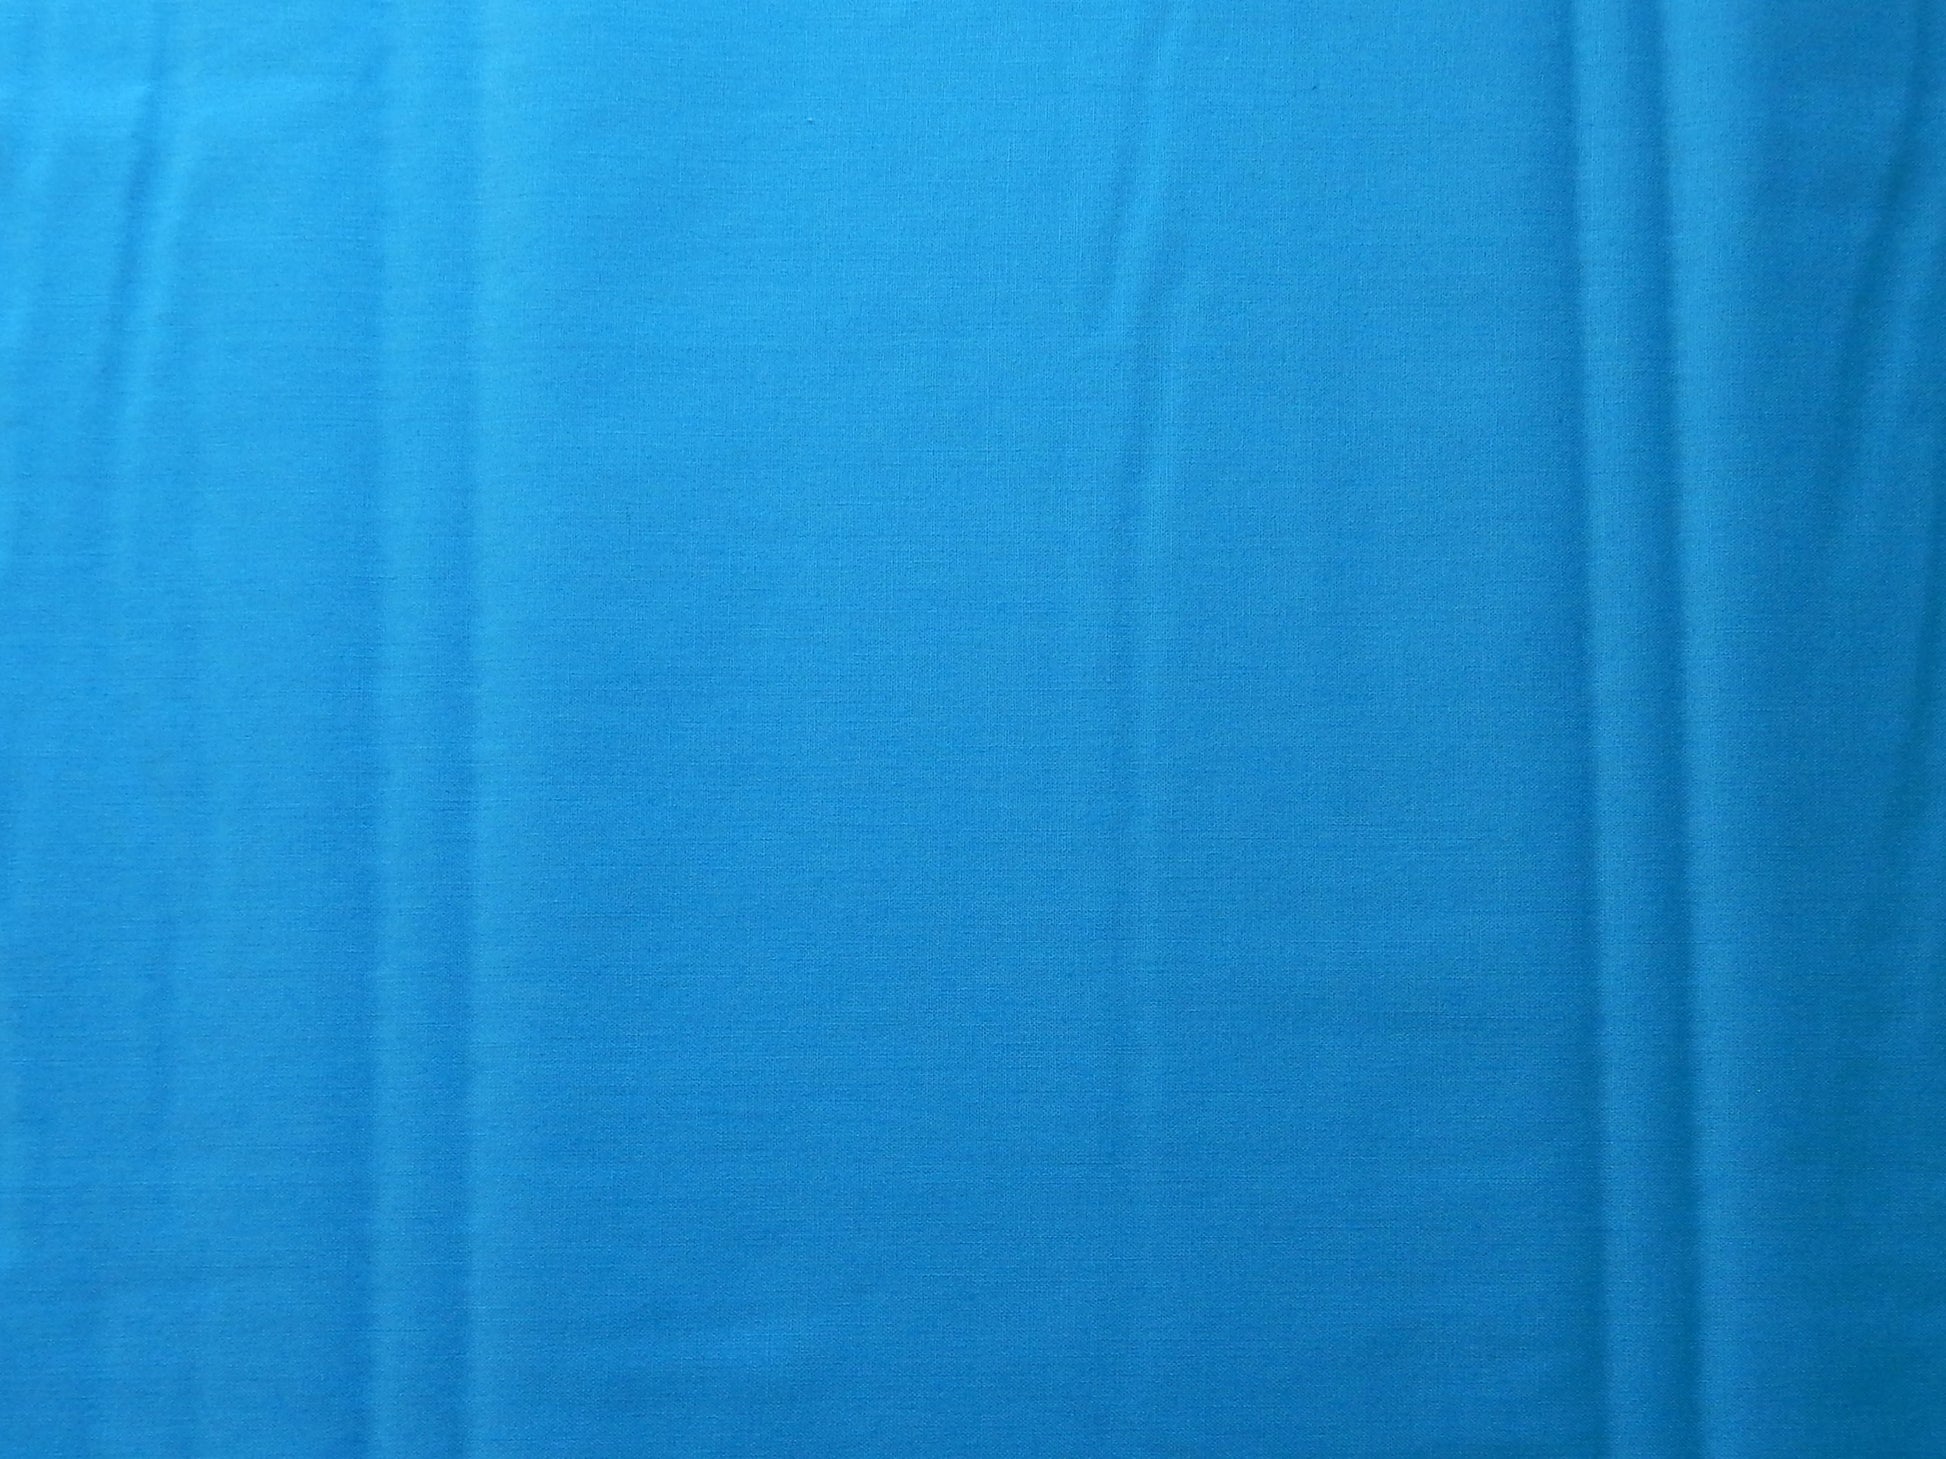 paintbrush studios artesian bright blue quilting fabric